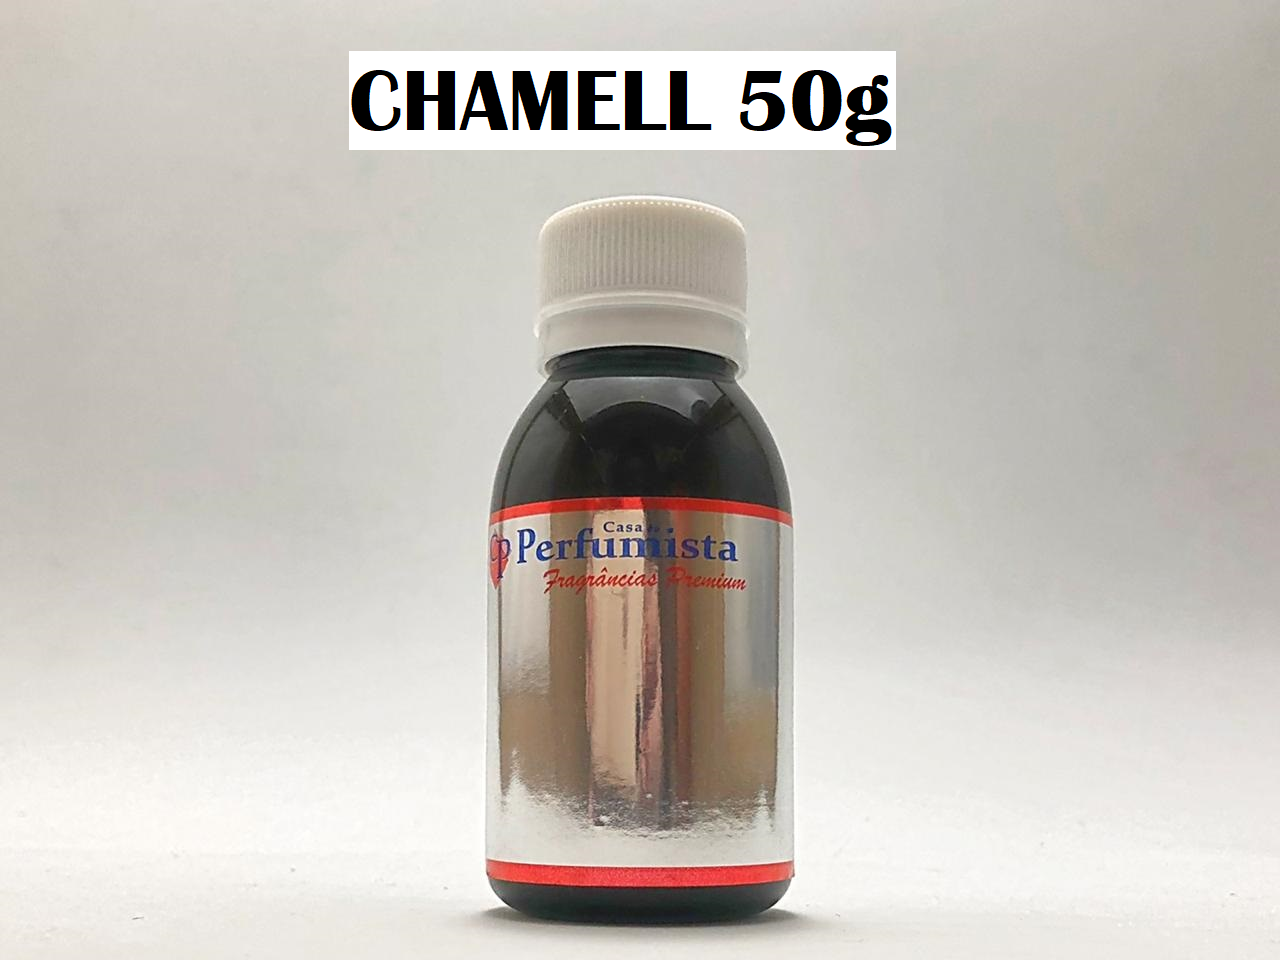 CHAMELL 50g - Inspiração Chanel 5 Feminino 